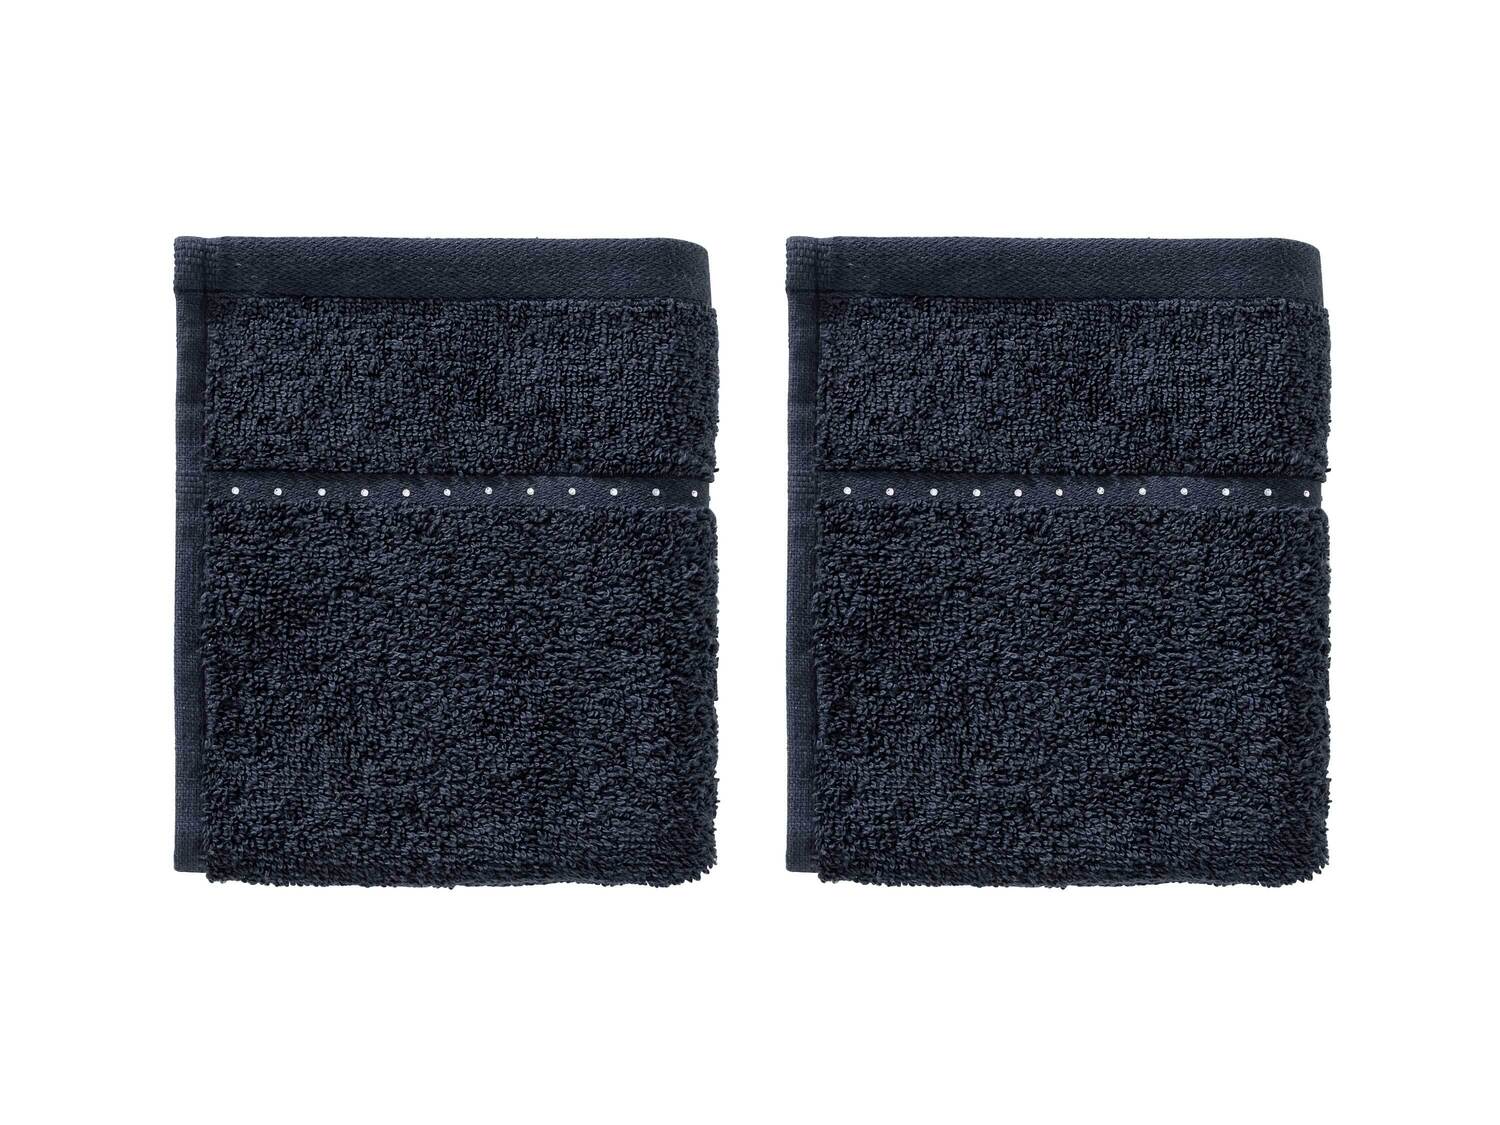 Ręczniki 30 x 50 cm, 2 szt. 450 g/m² Miomare, cena 9,99 PLN 
3 kolory 
- miękkie ...